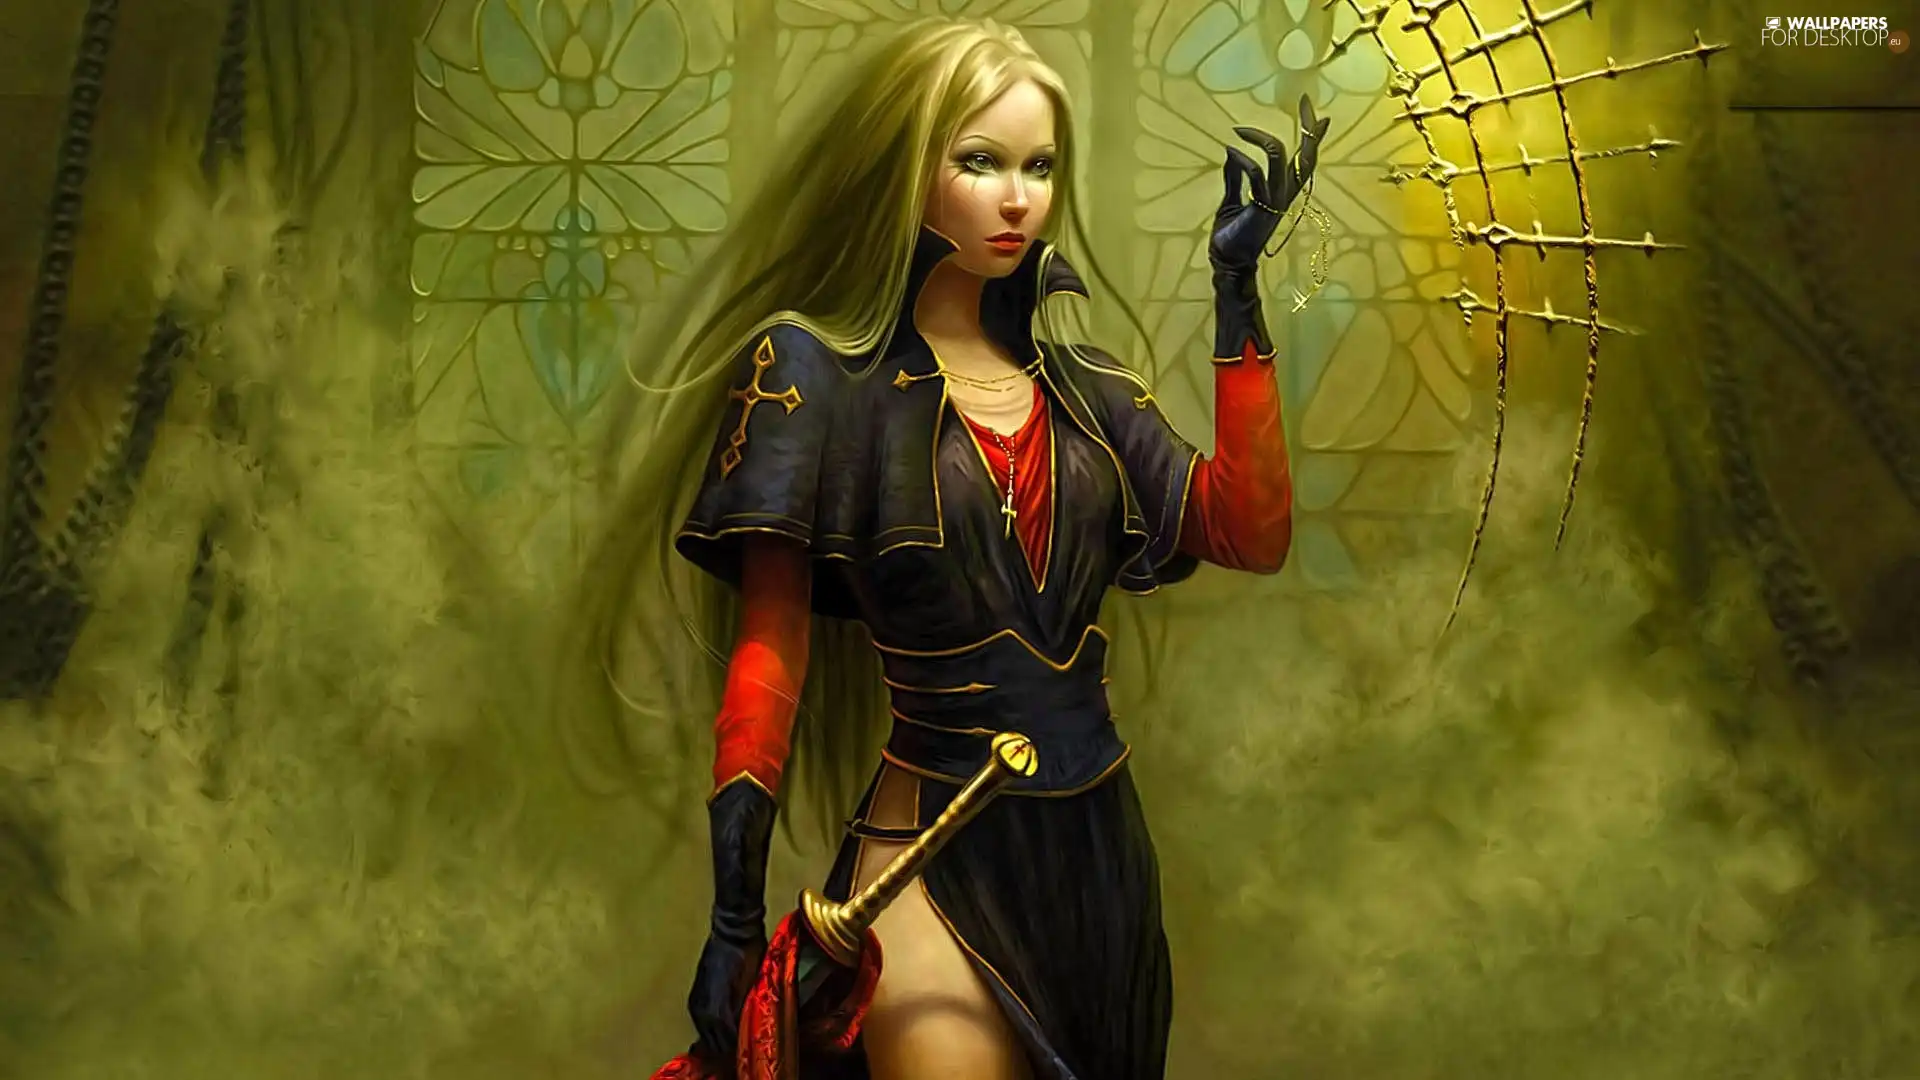 Women, sword, graphics, costume